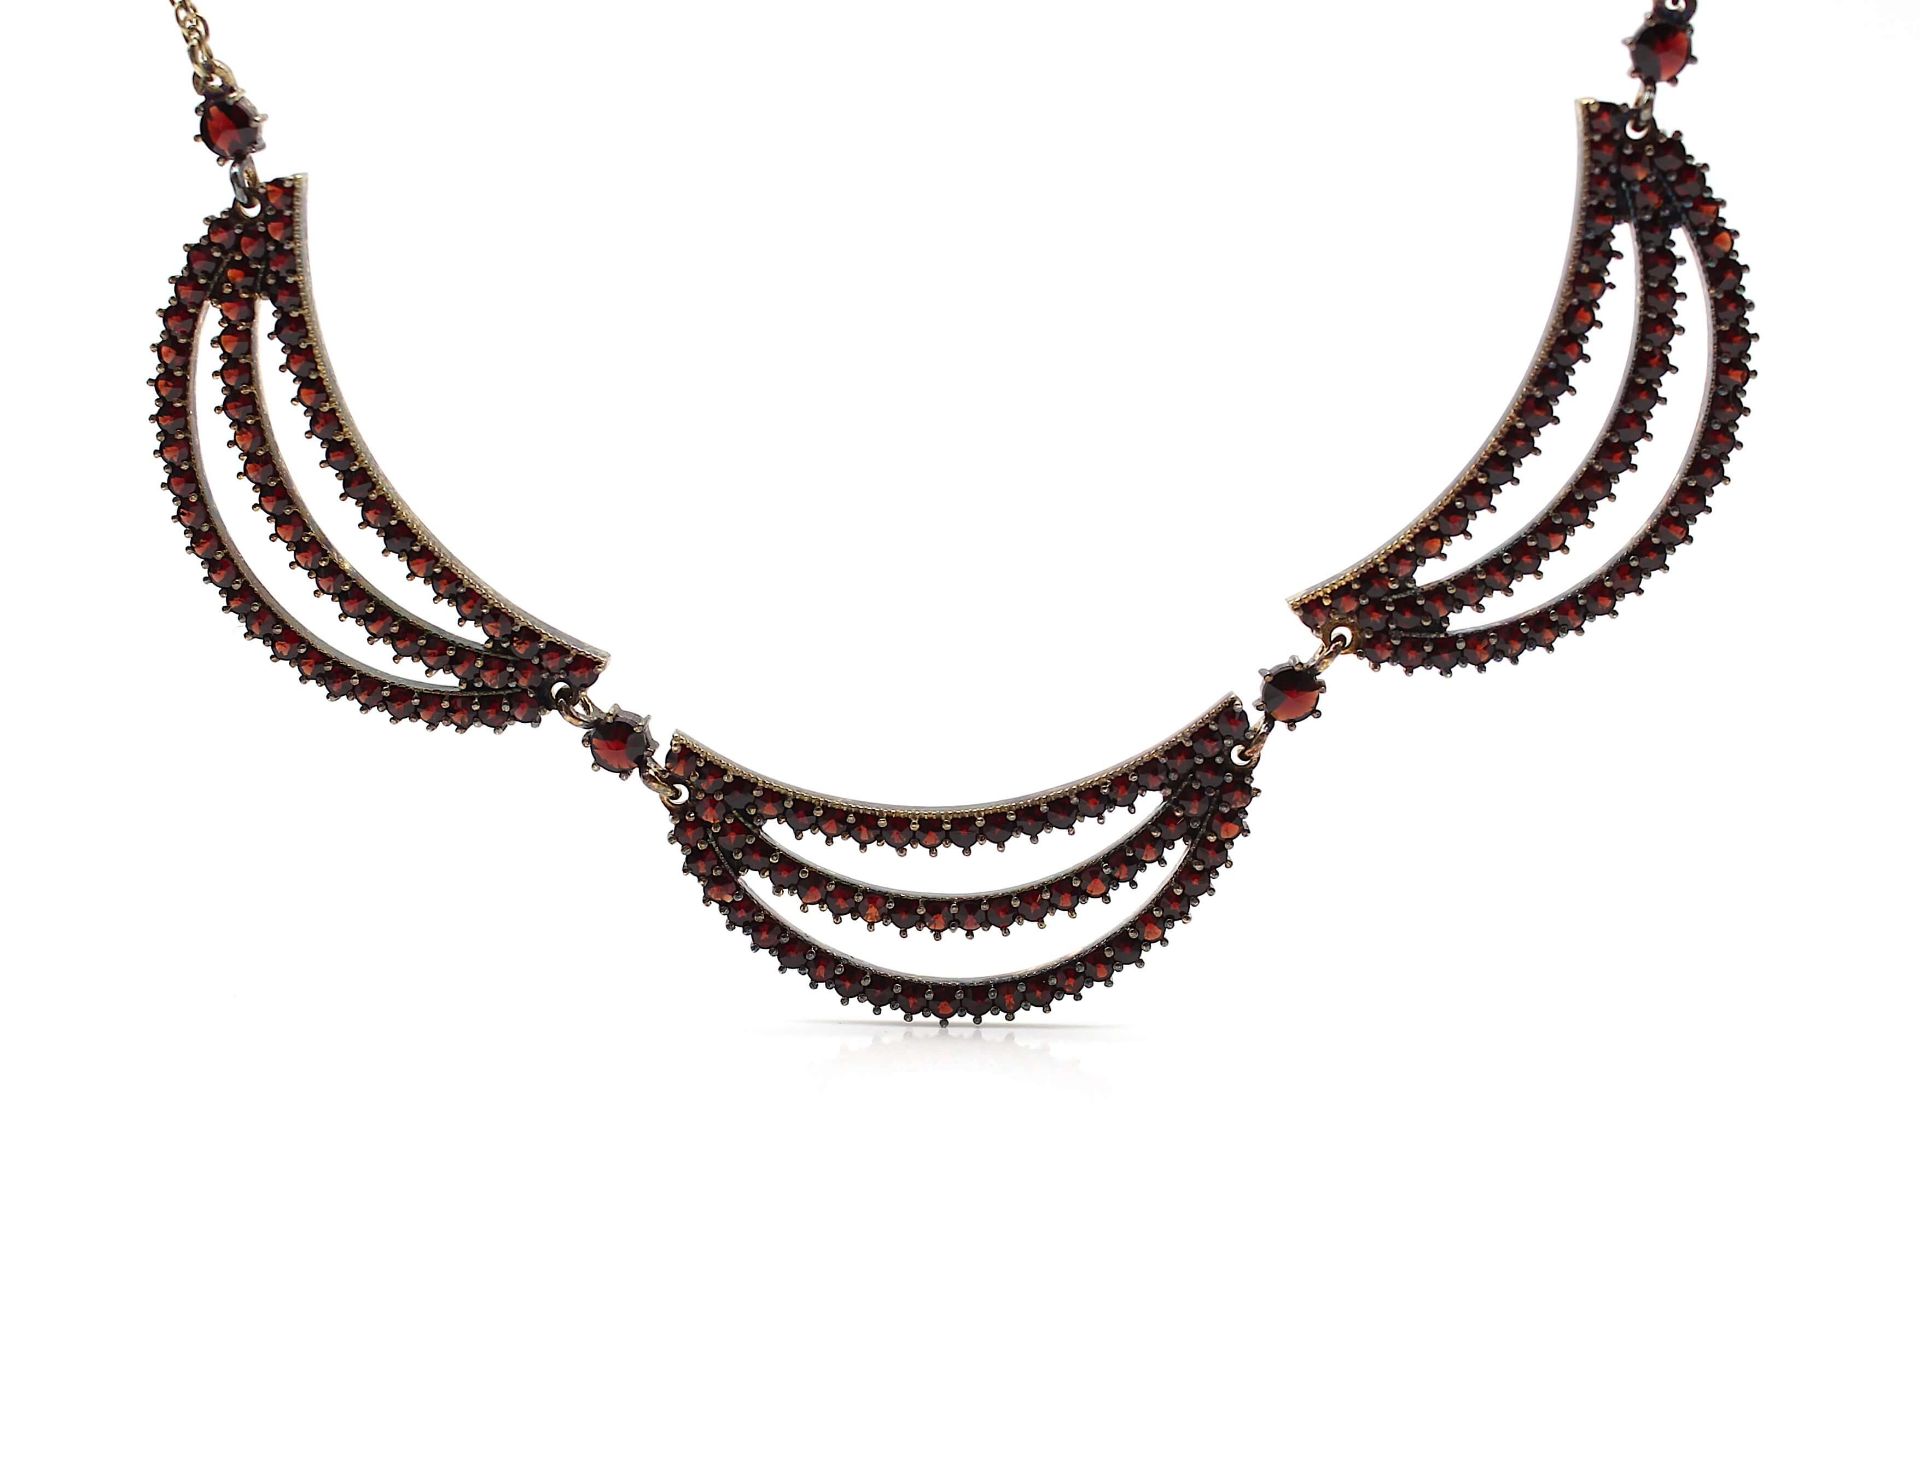 Garnet necklace - Image 2 of 3